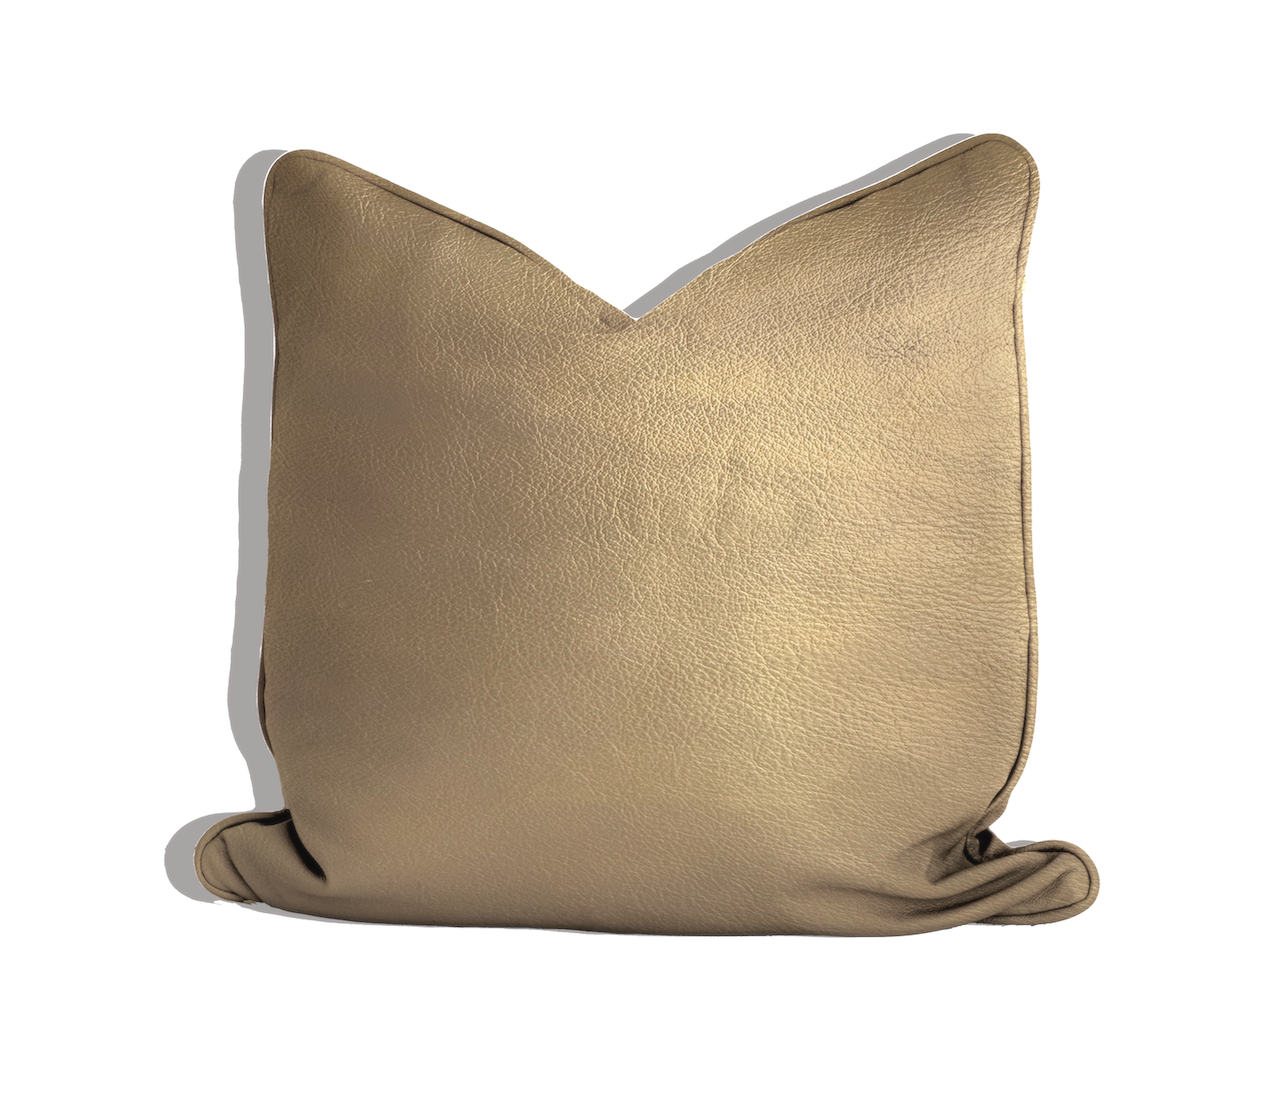 Golden Cushion